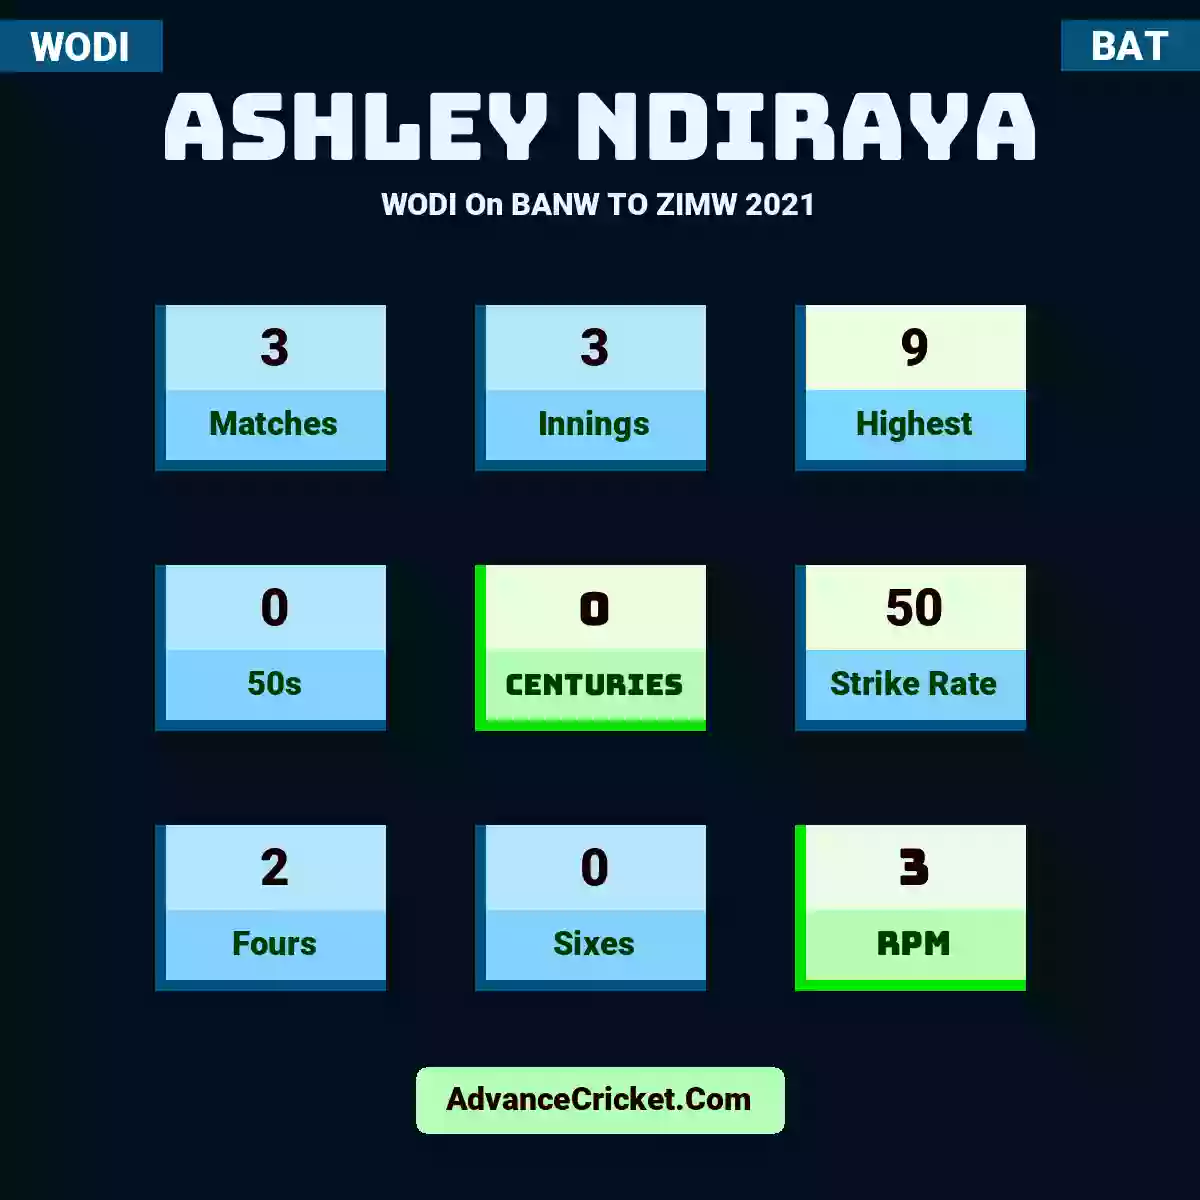 Ashley Ndiraya WODI  On BANW TO ZIMW 2021, Ashley Ndiraya played 3 matches, scored 9 runs as highest, 0 half-centuries, and 0 centuries, with a strike rate of 50. A.Ndiraya hit 2 fours and 0 sixes, with an RPM of 3.